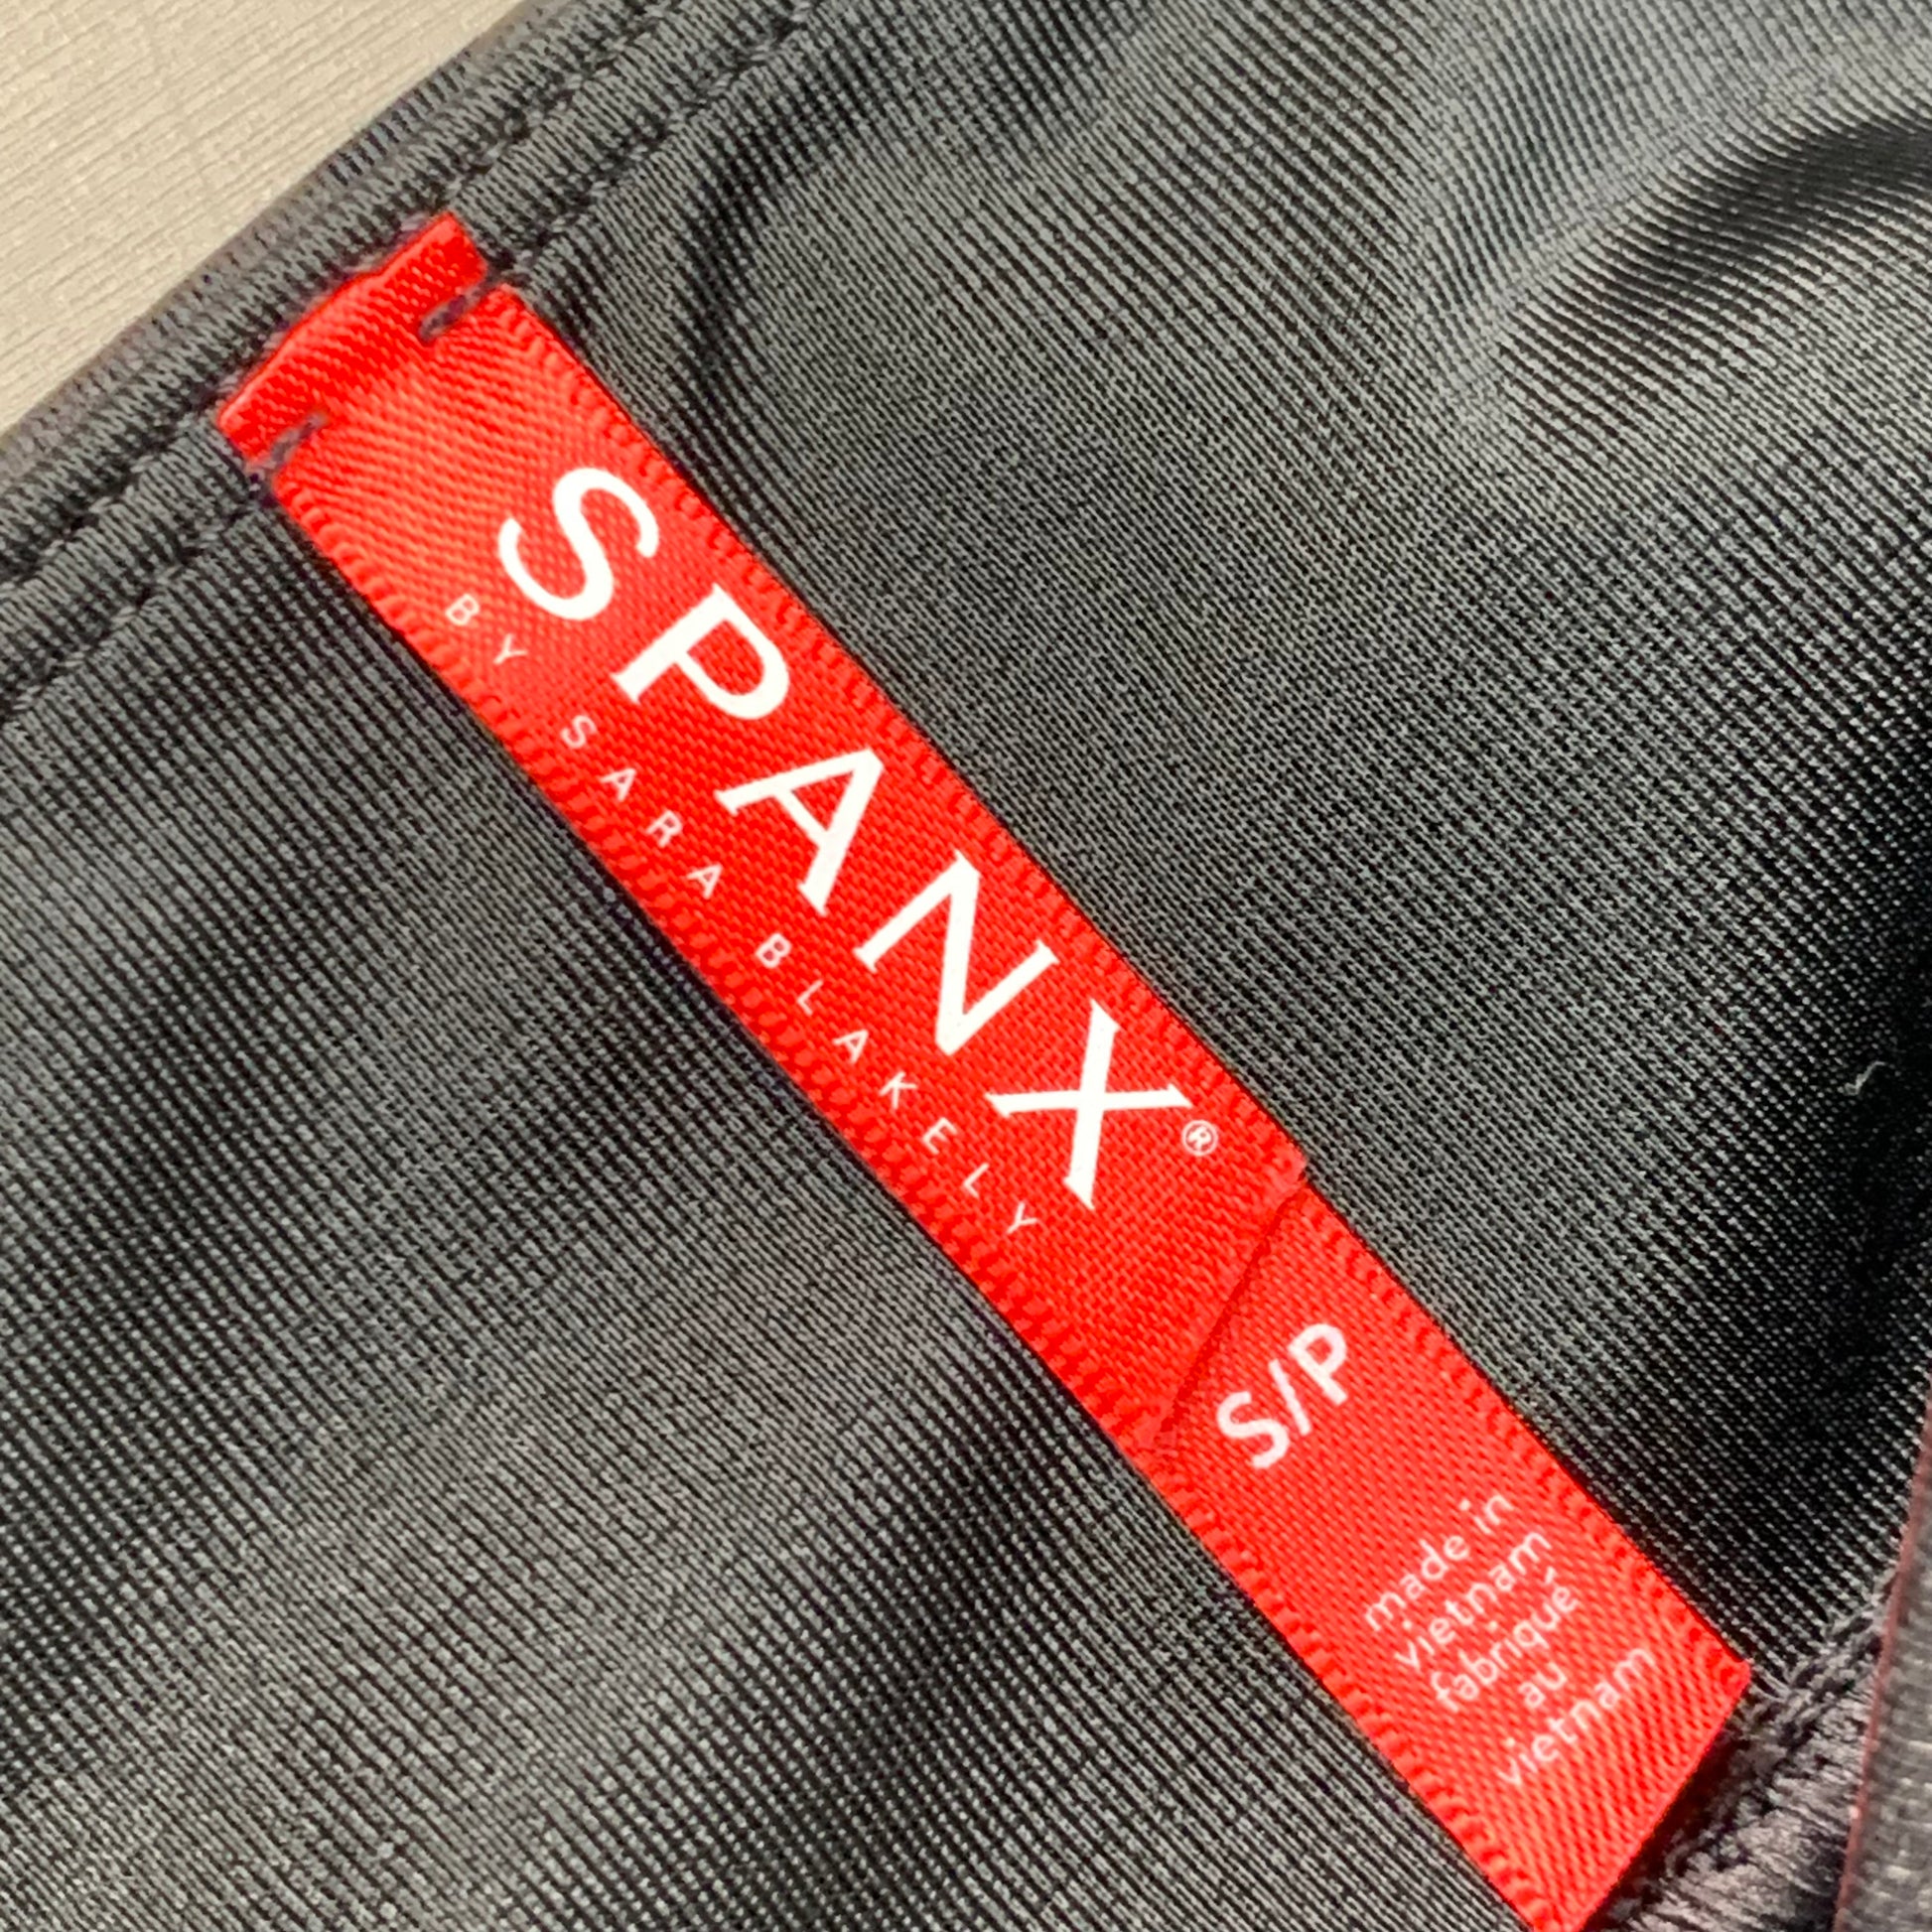 Spanx Women's US L Faux Leather Camo Leggings Black 20185R for sale online